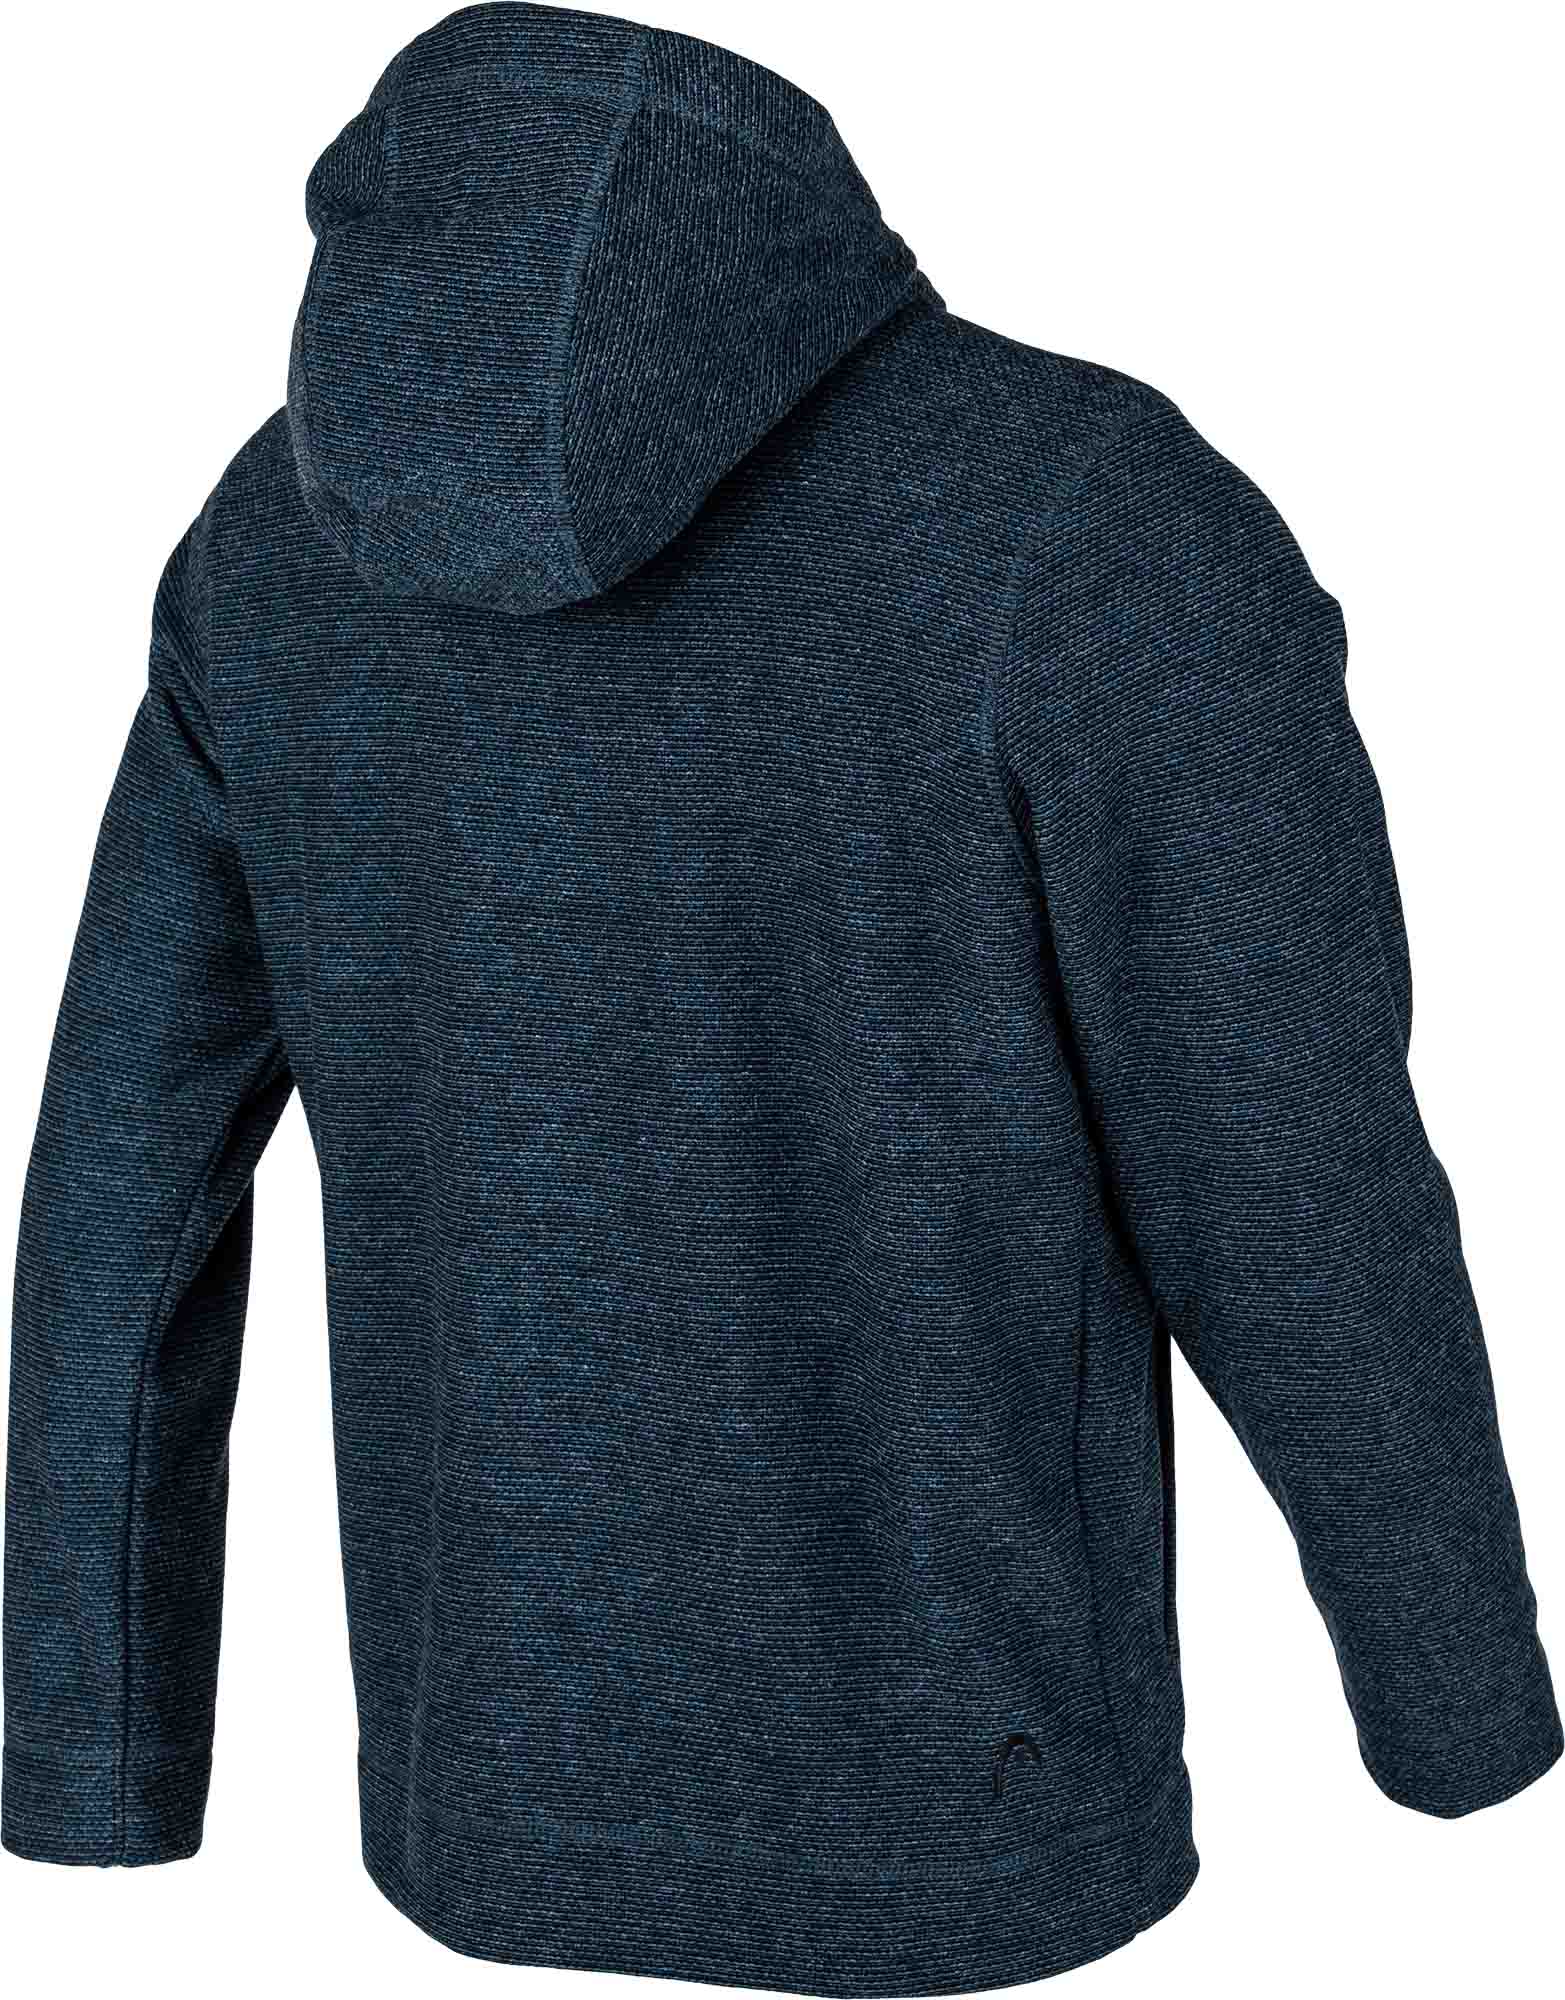 Men's fleece hoodie